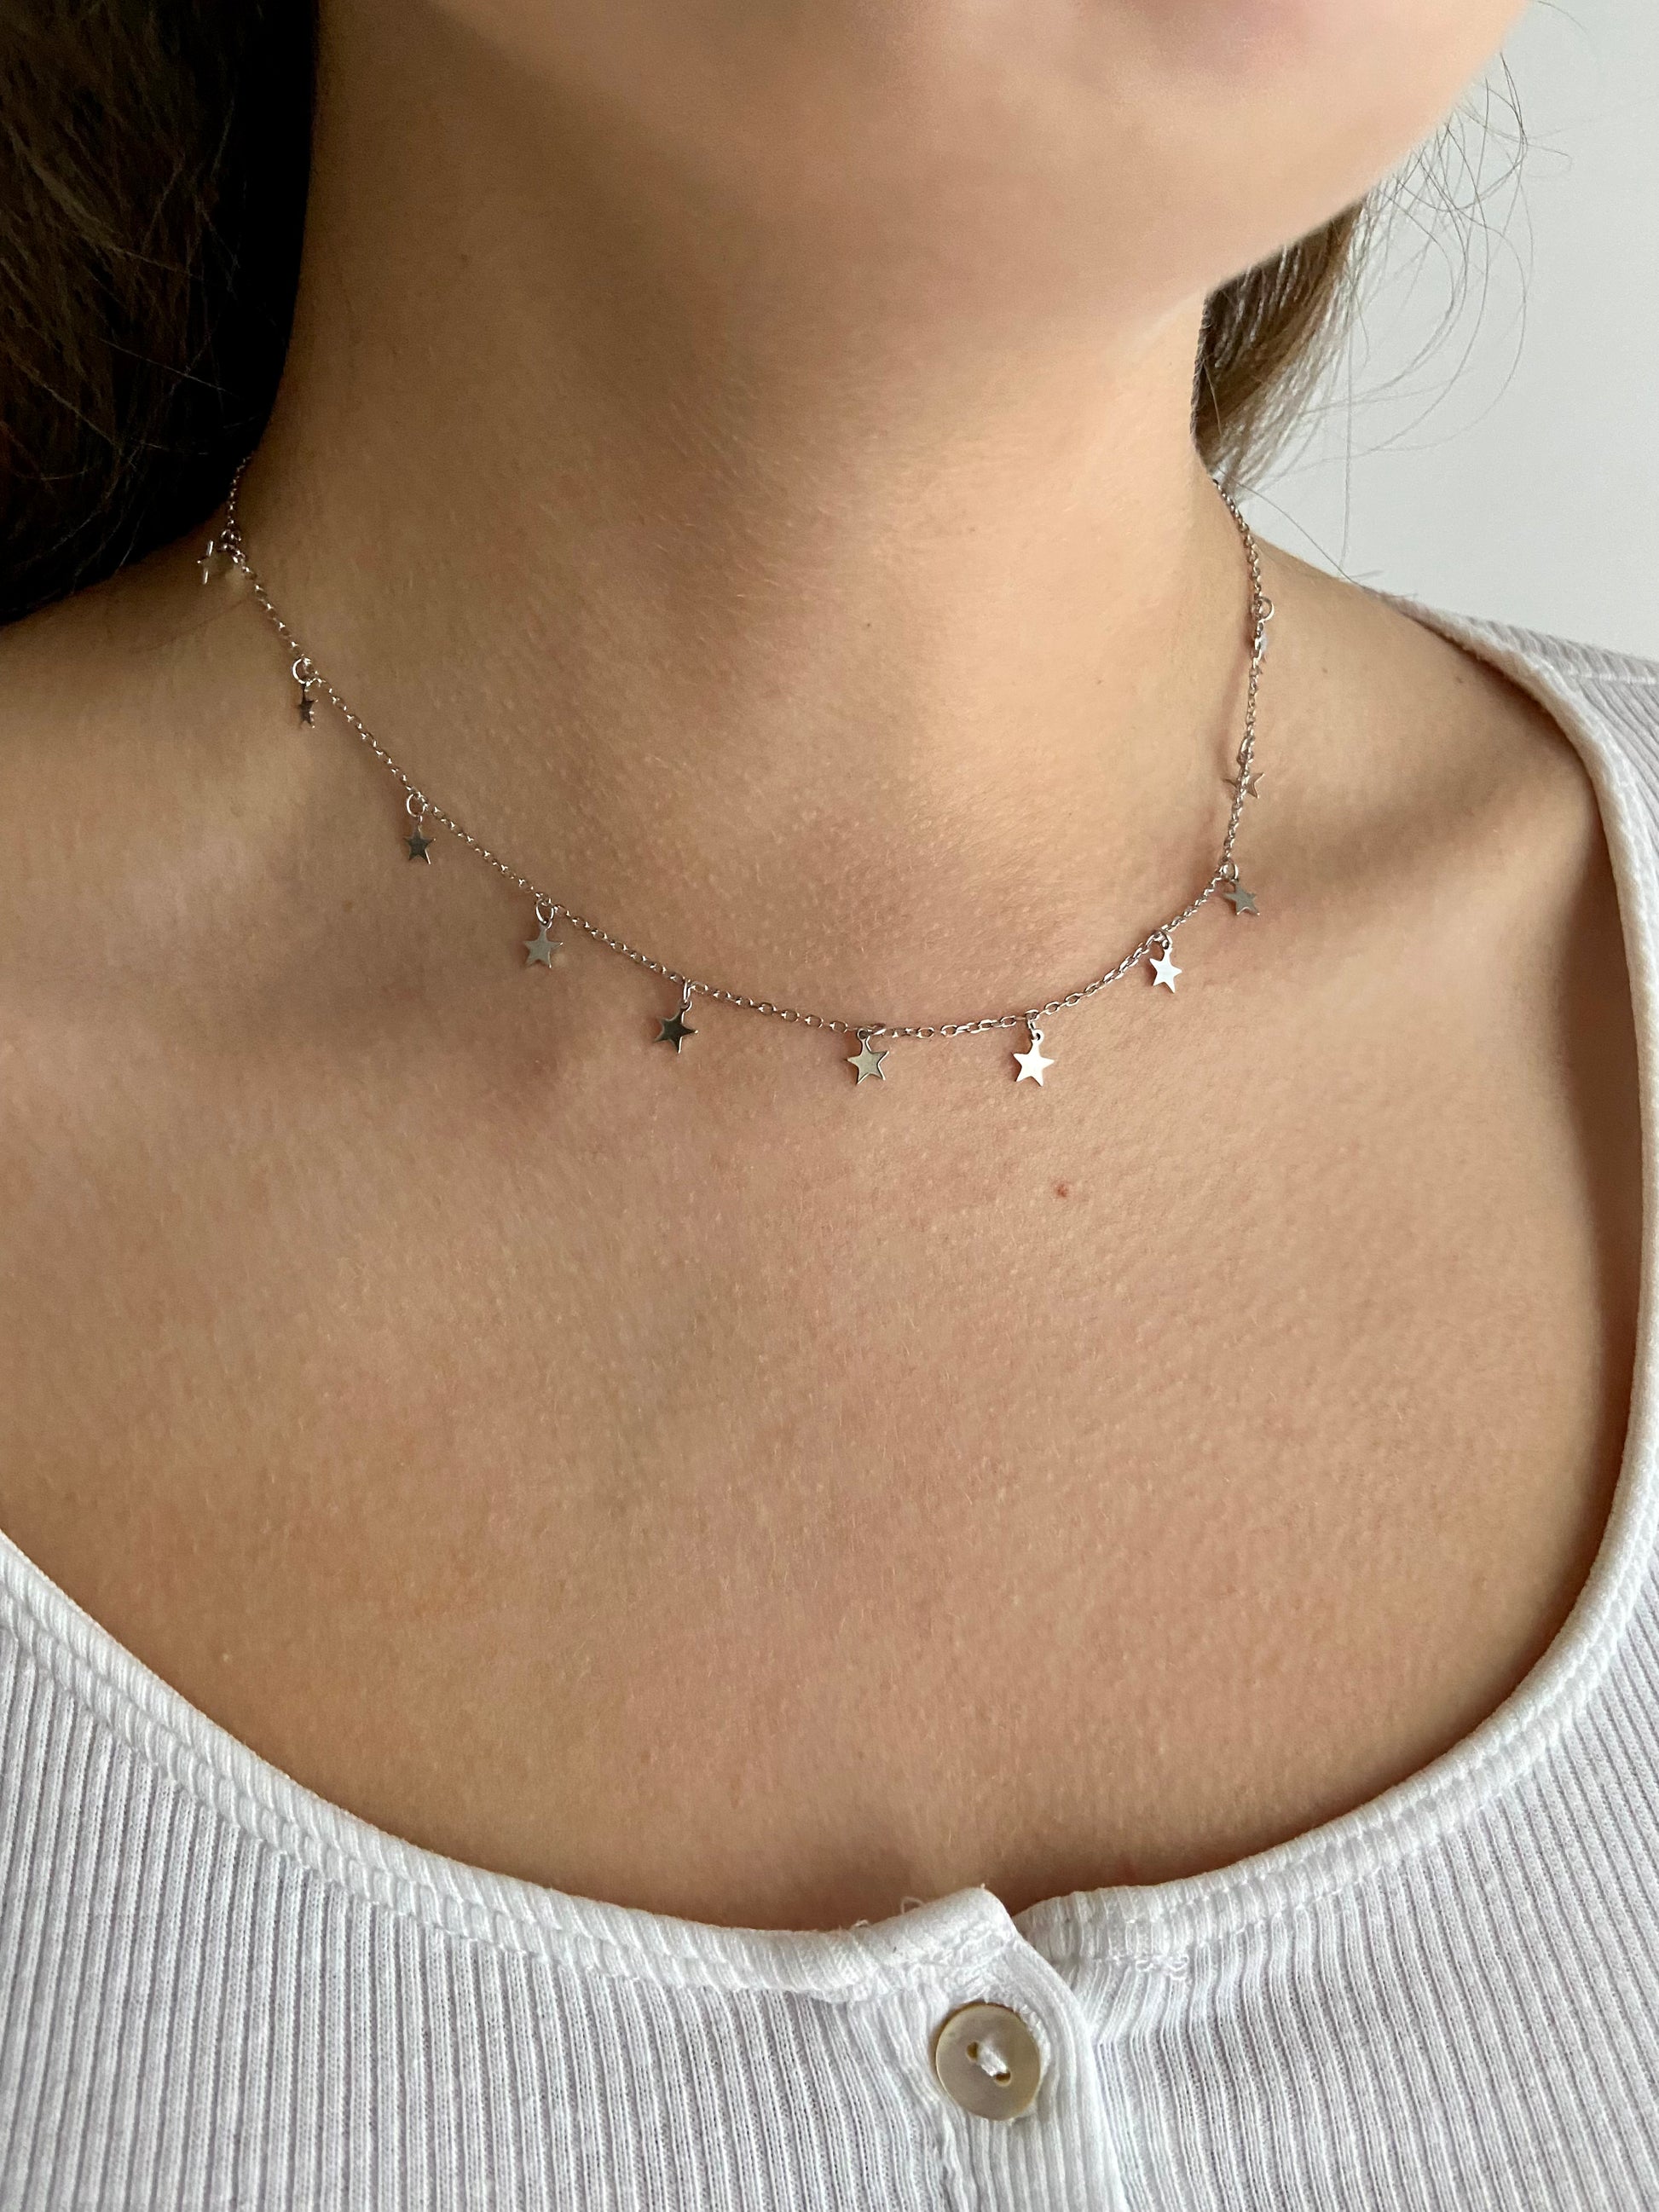 zierliche Silberkette mit kleinen Sternchenanhängern, Pailettenkette, minimalistischer Schmuck